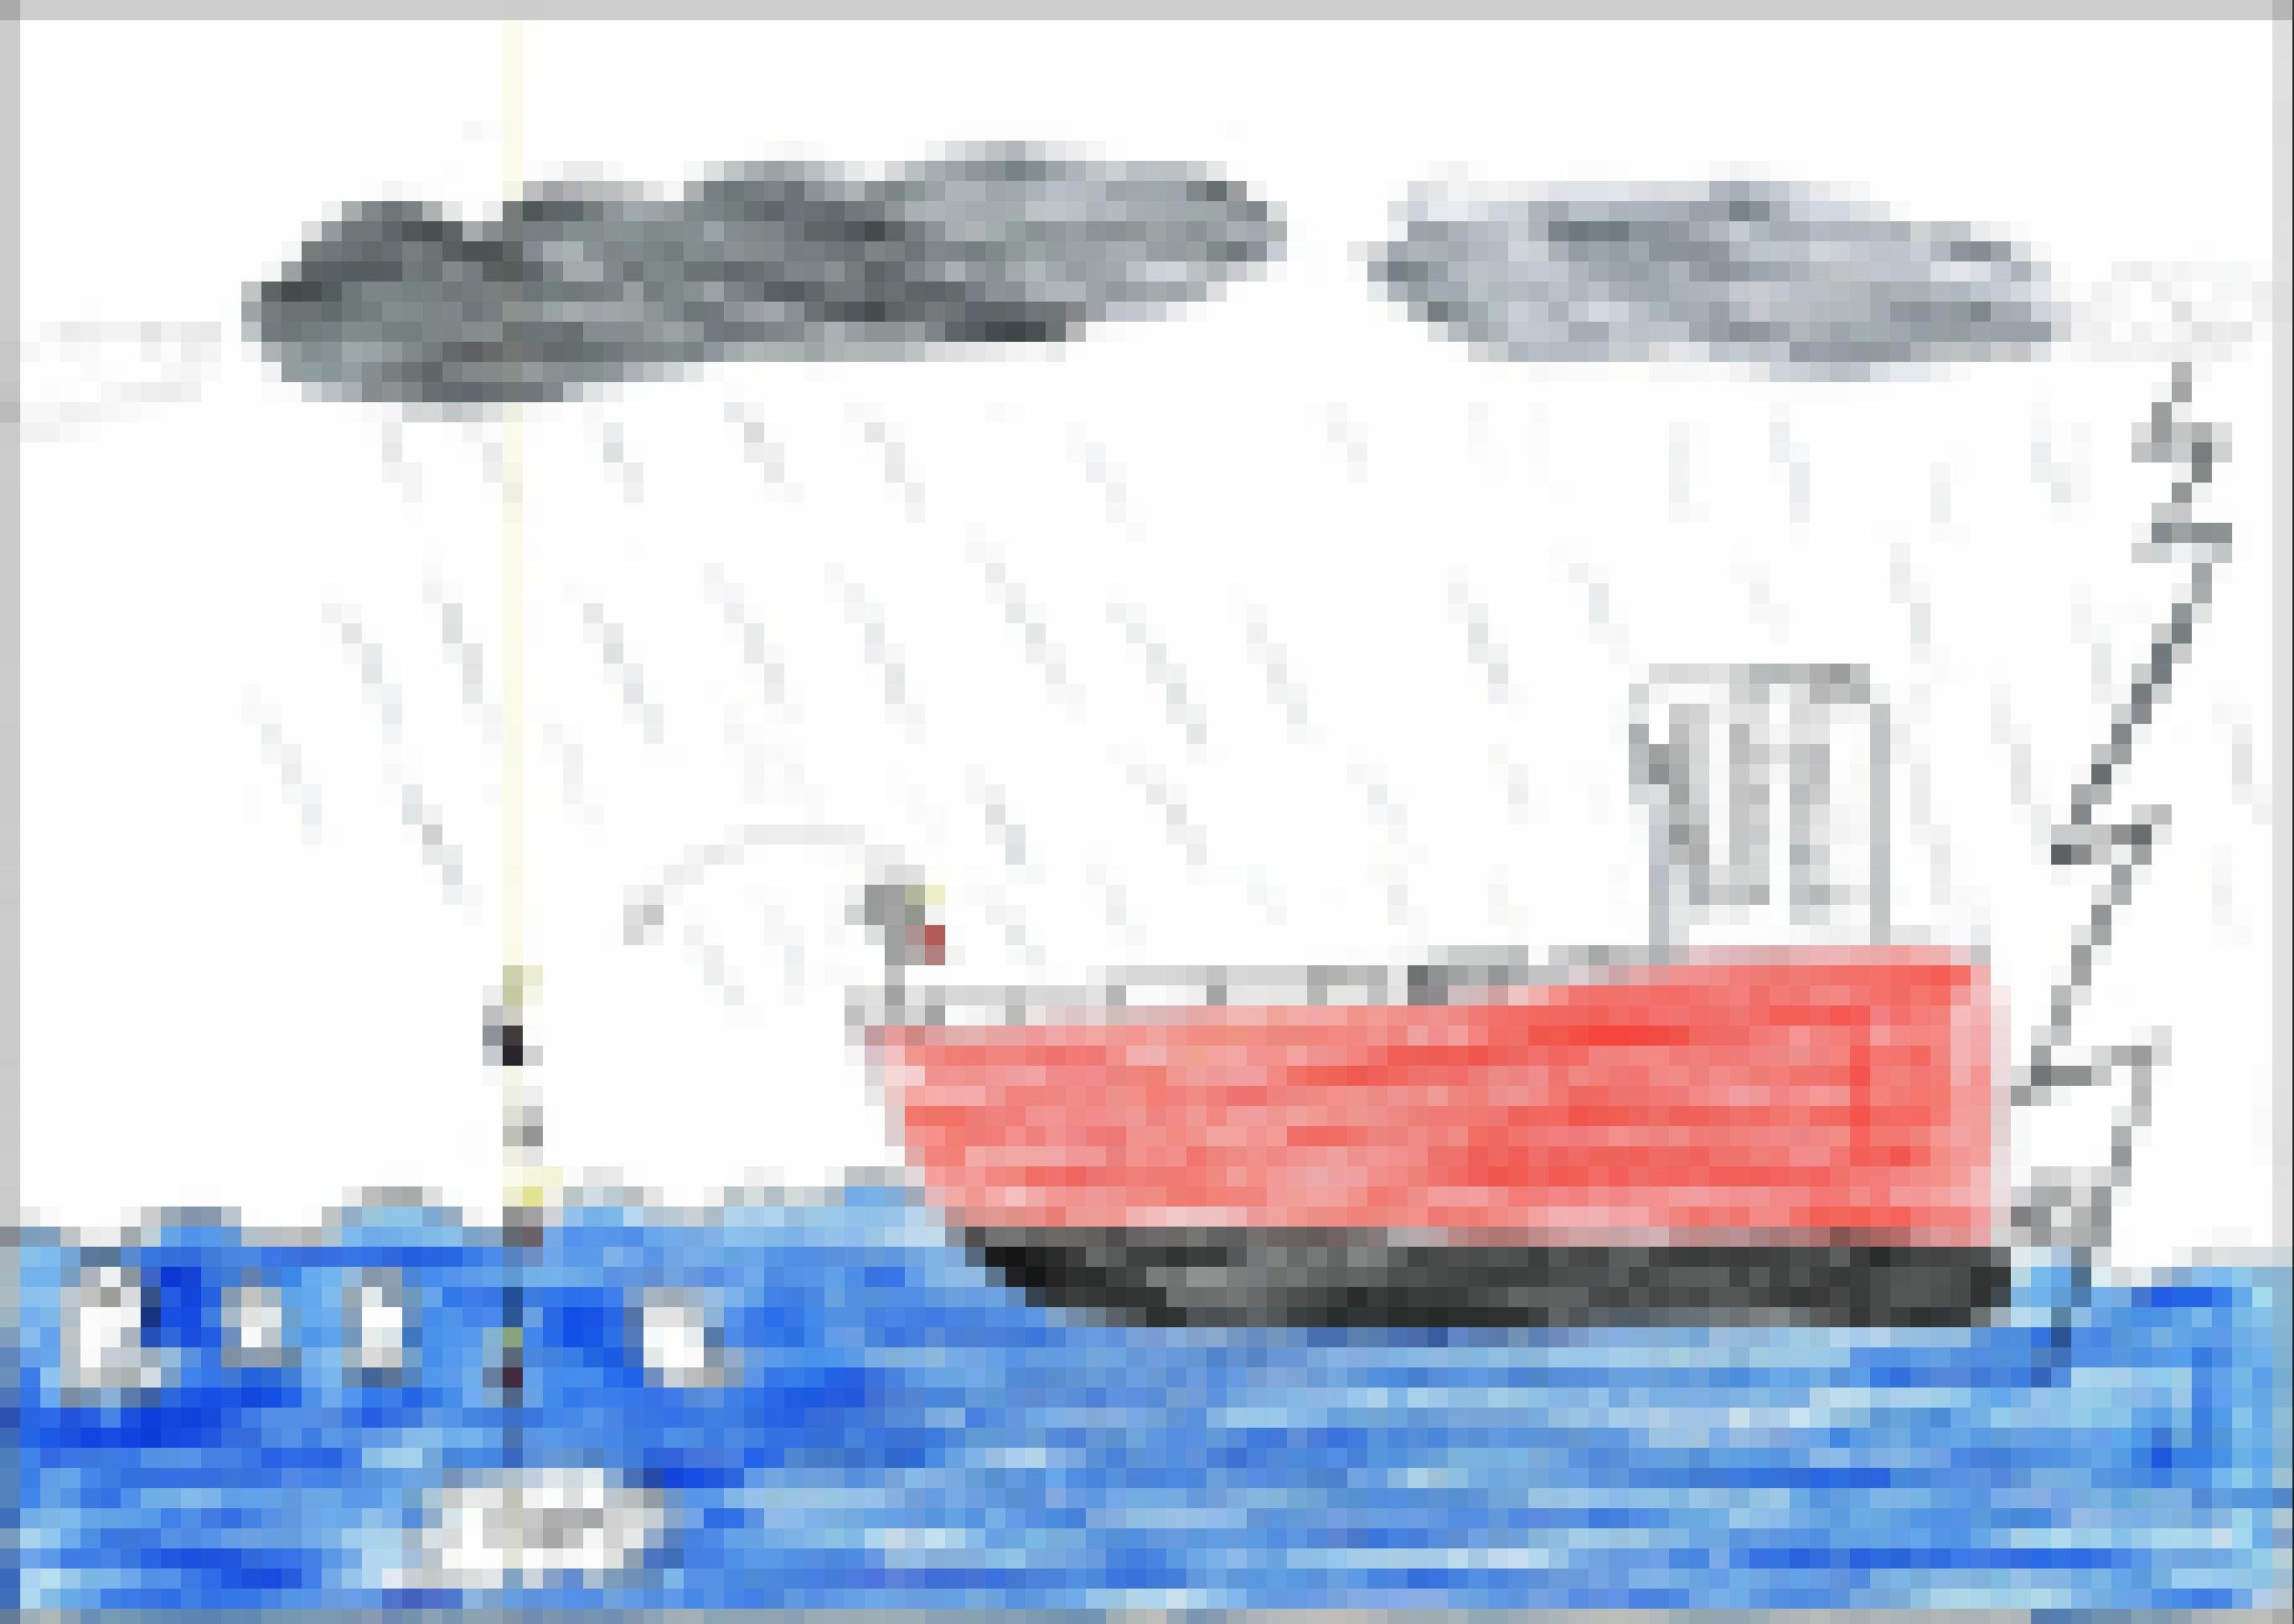 Eine Kinderzeichnung mit einem großen Schiff, von dem aus eine Figur explodierende Dynamitstangen ins Wasser wirft, wo schon tote Fische treiben.